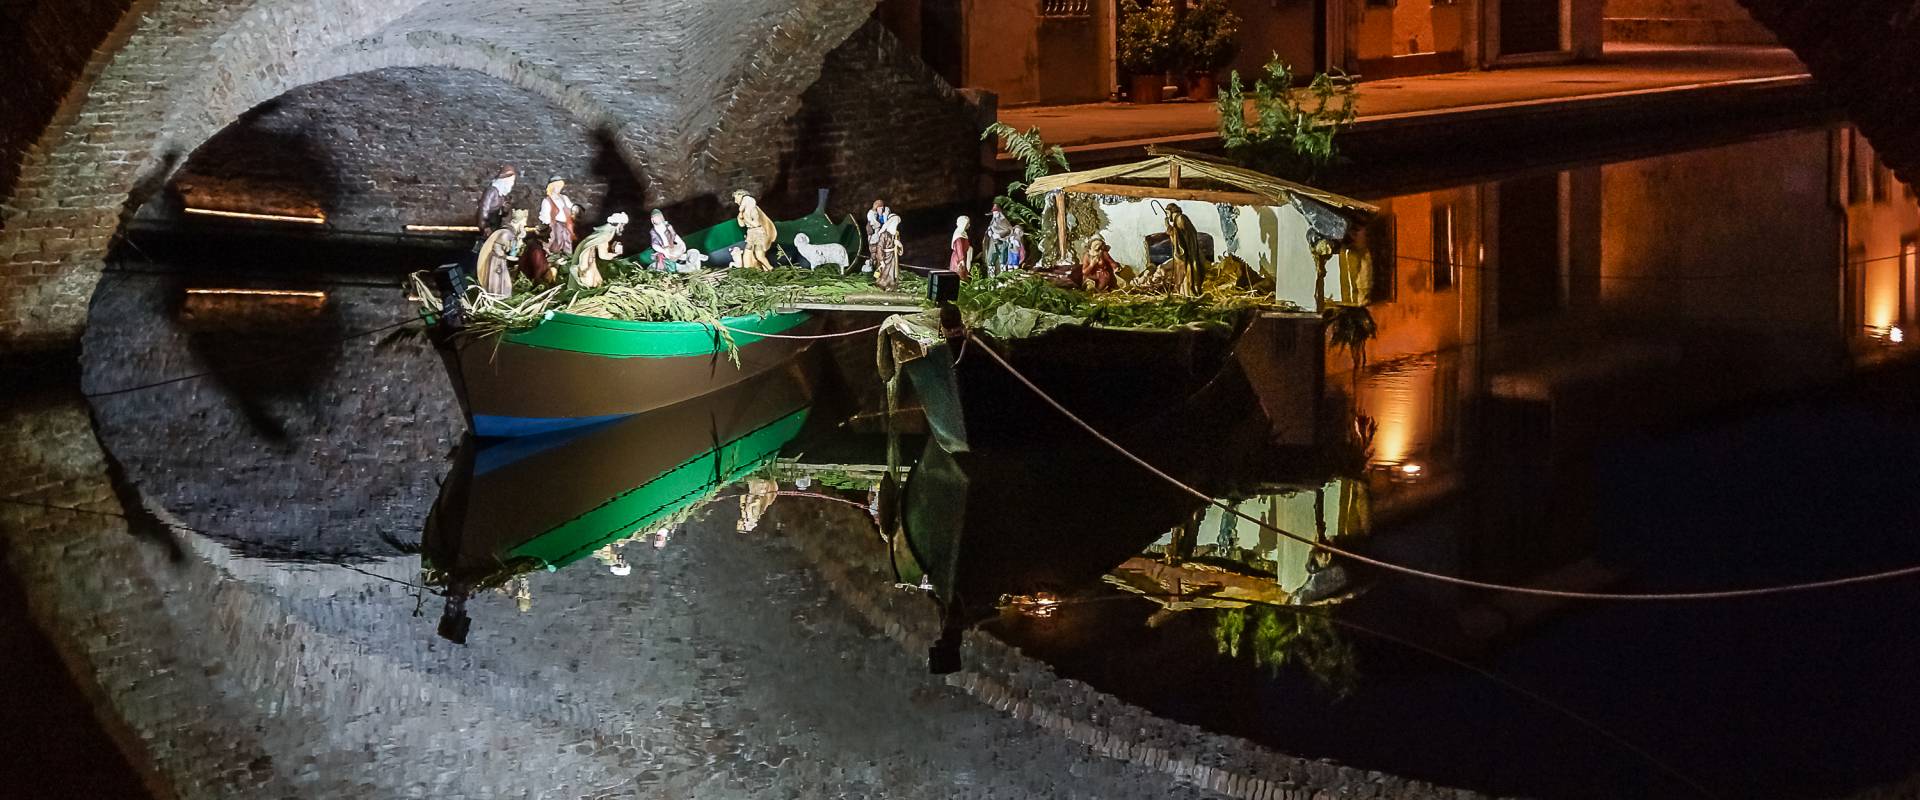 Presepe sotto il ponte di San Pietro photo by Vanni Lazzari